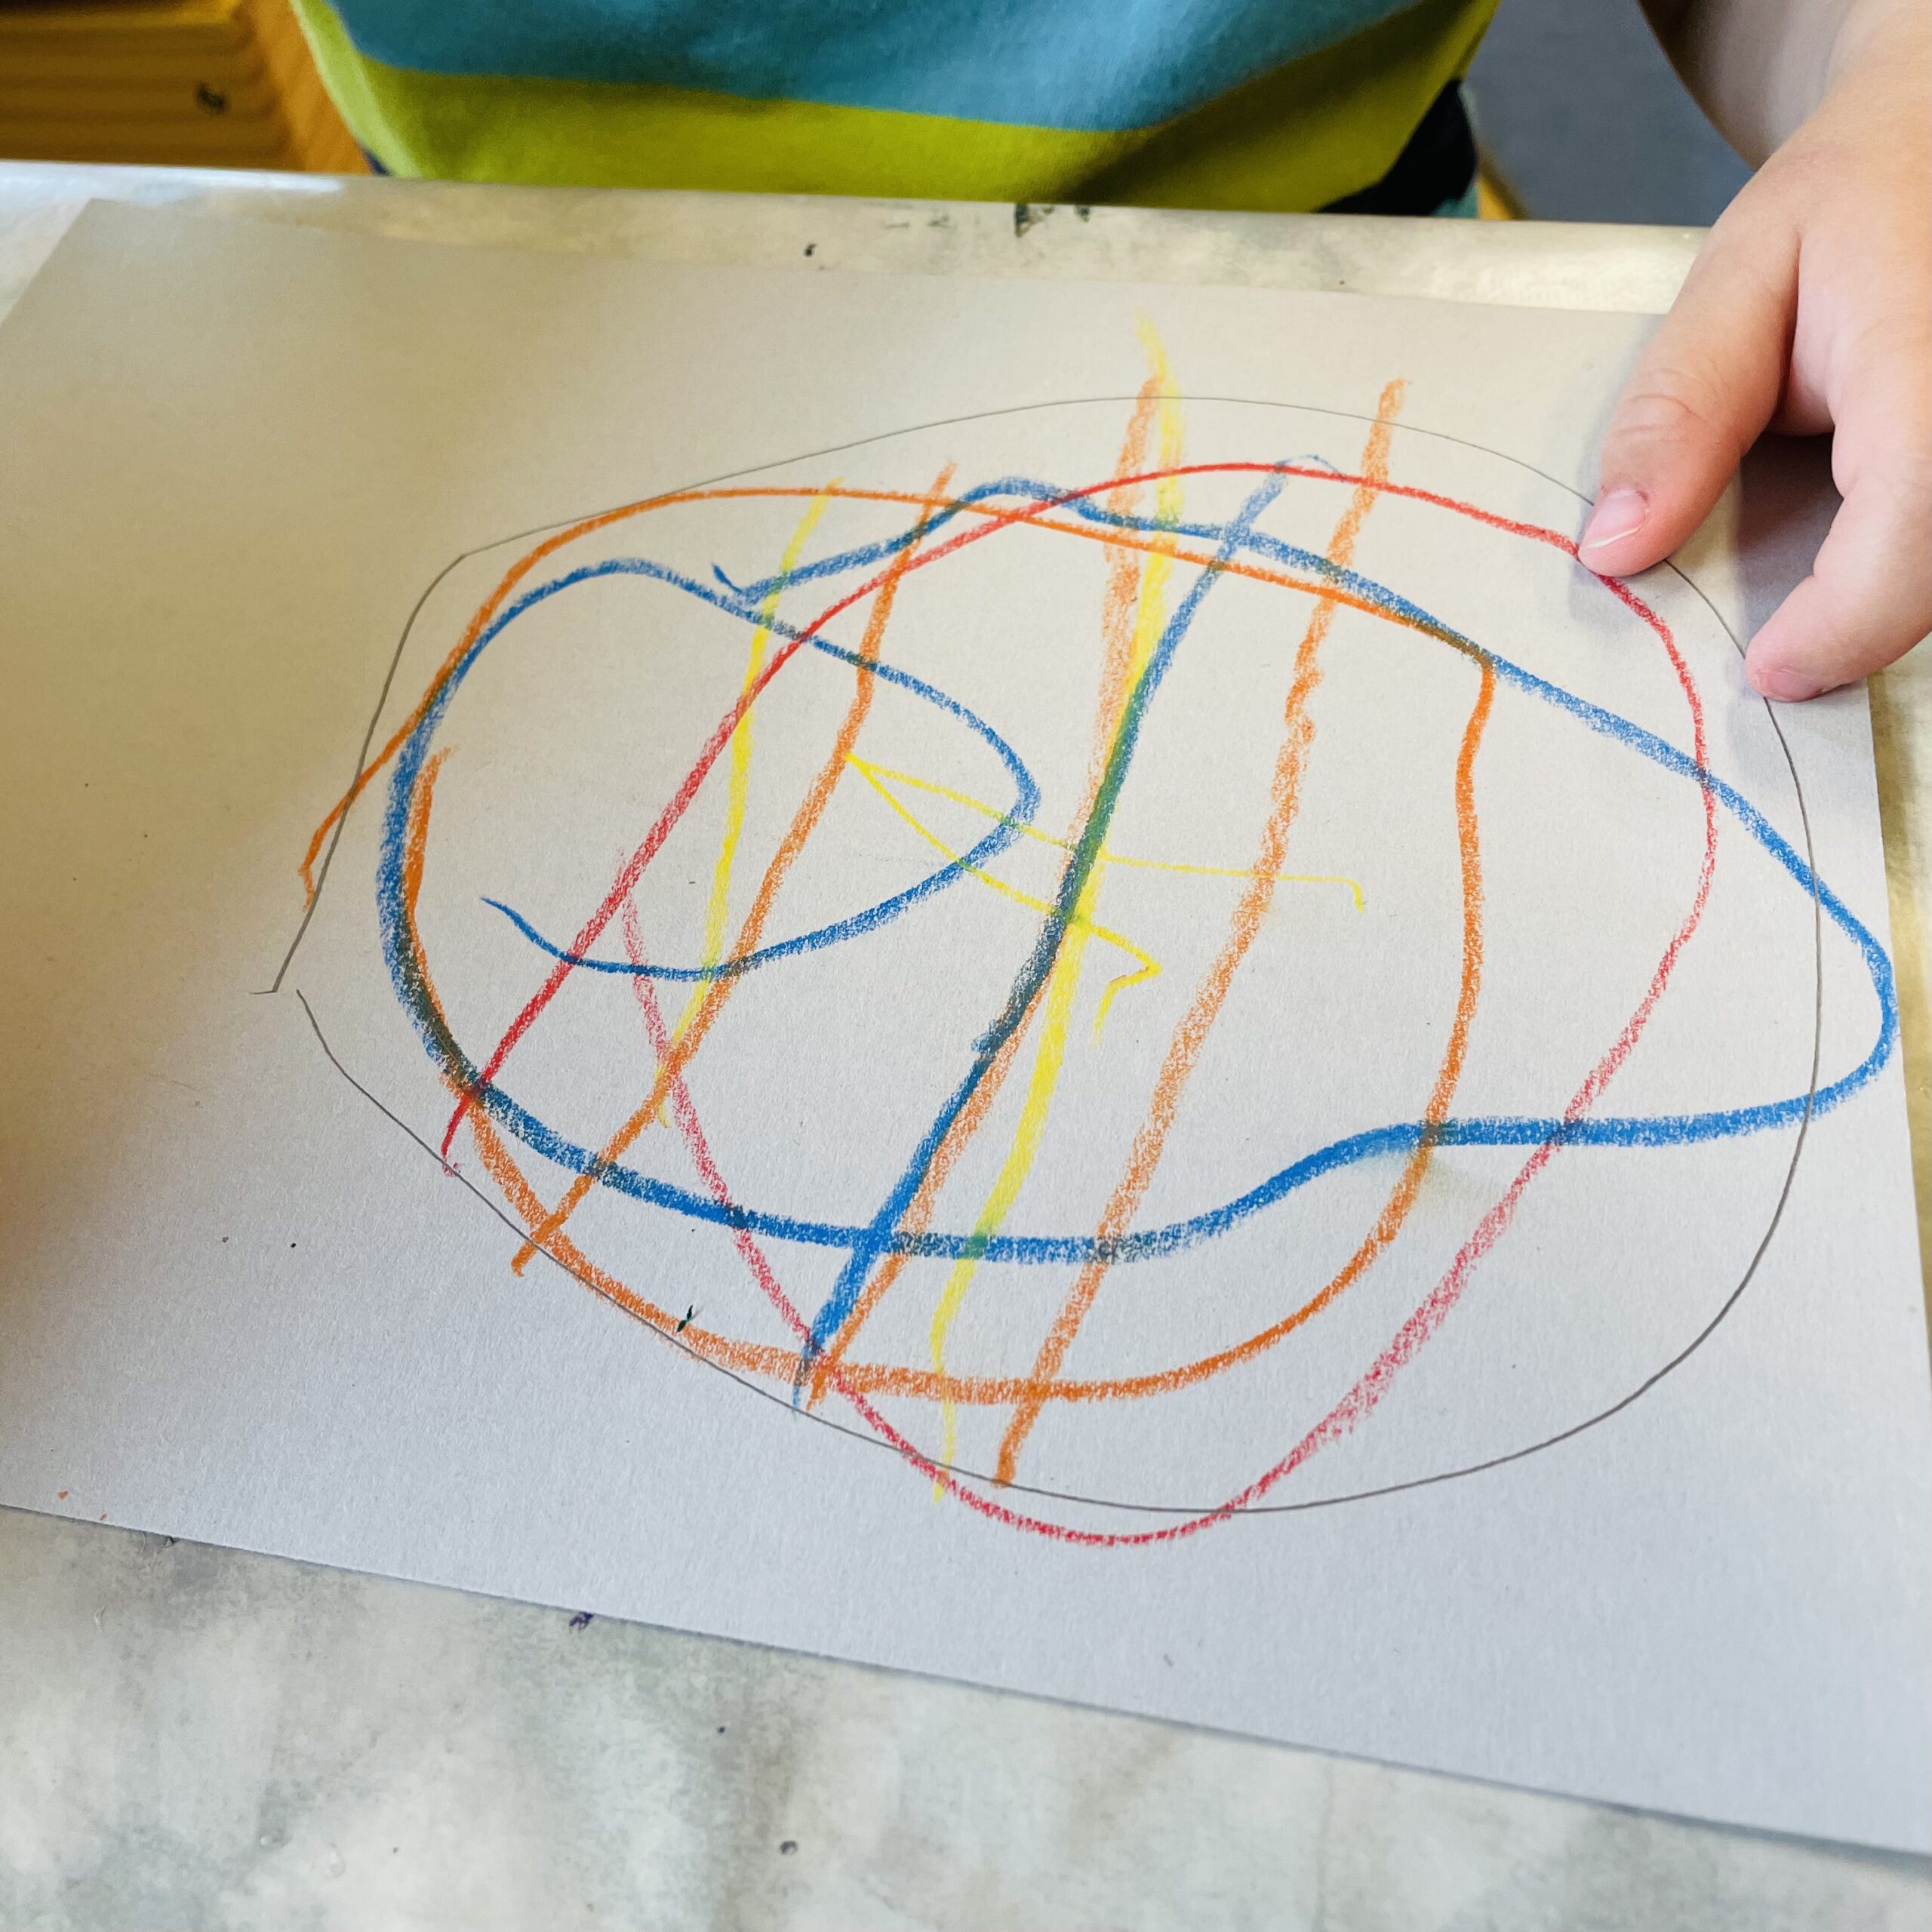 Bild zum Schritt 4 für das Bastel- und DIY-Abenteuer für Kinder: 'Malt z.B. Streifen, Kreise oder lasst malt sie einfach komplett...'